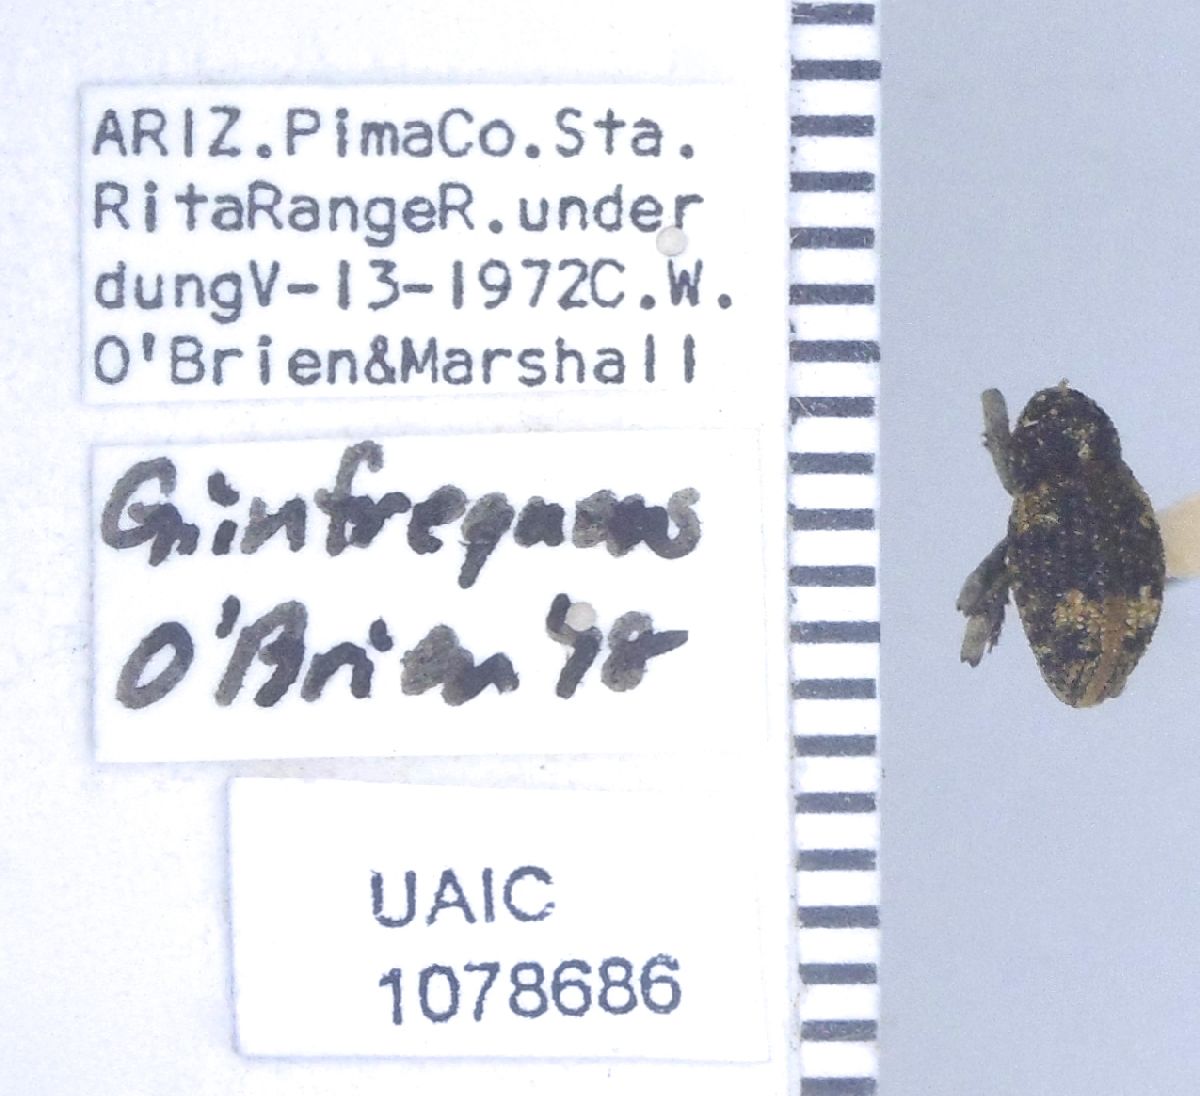 Curculionidae image